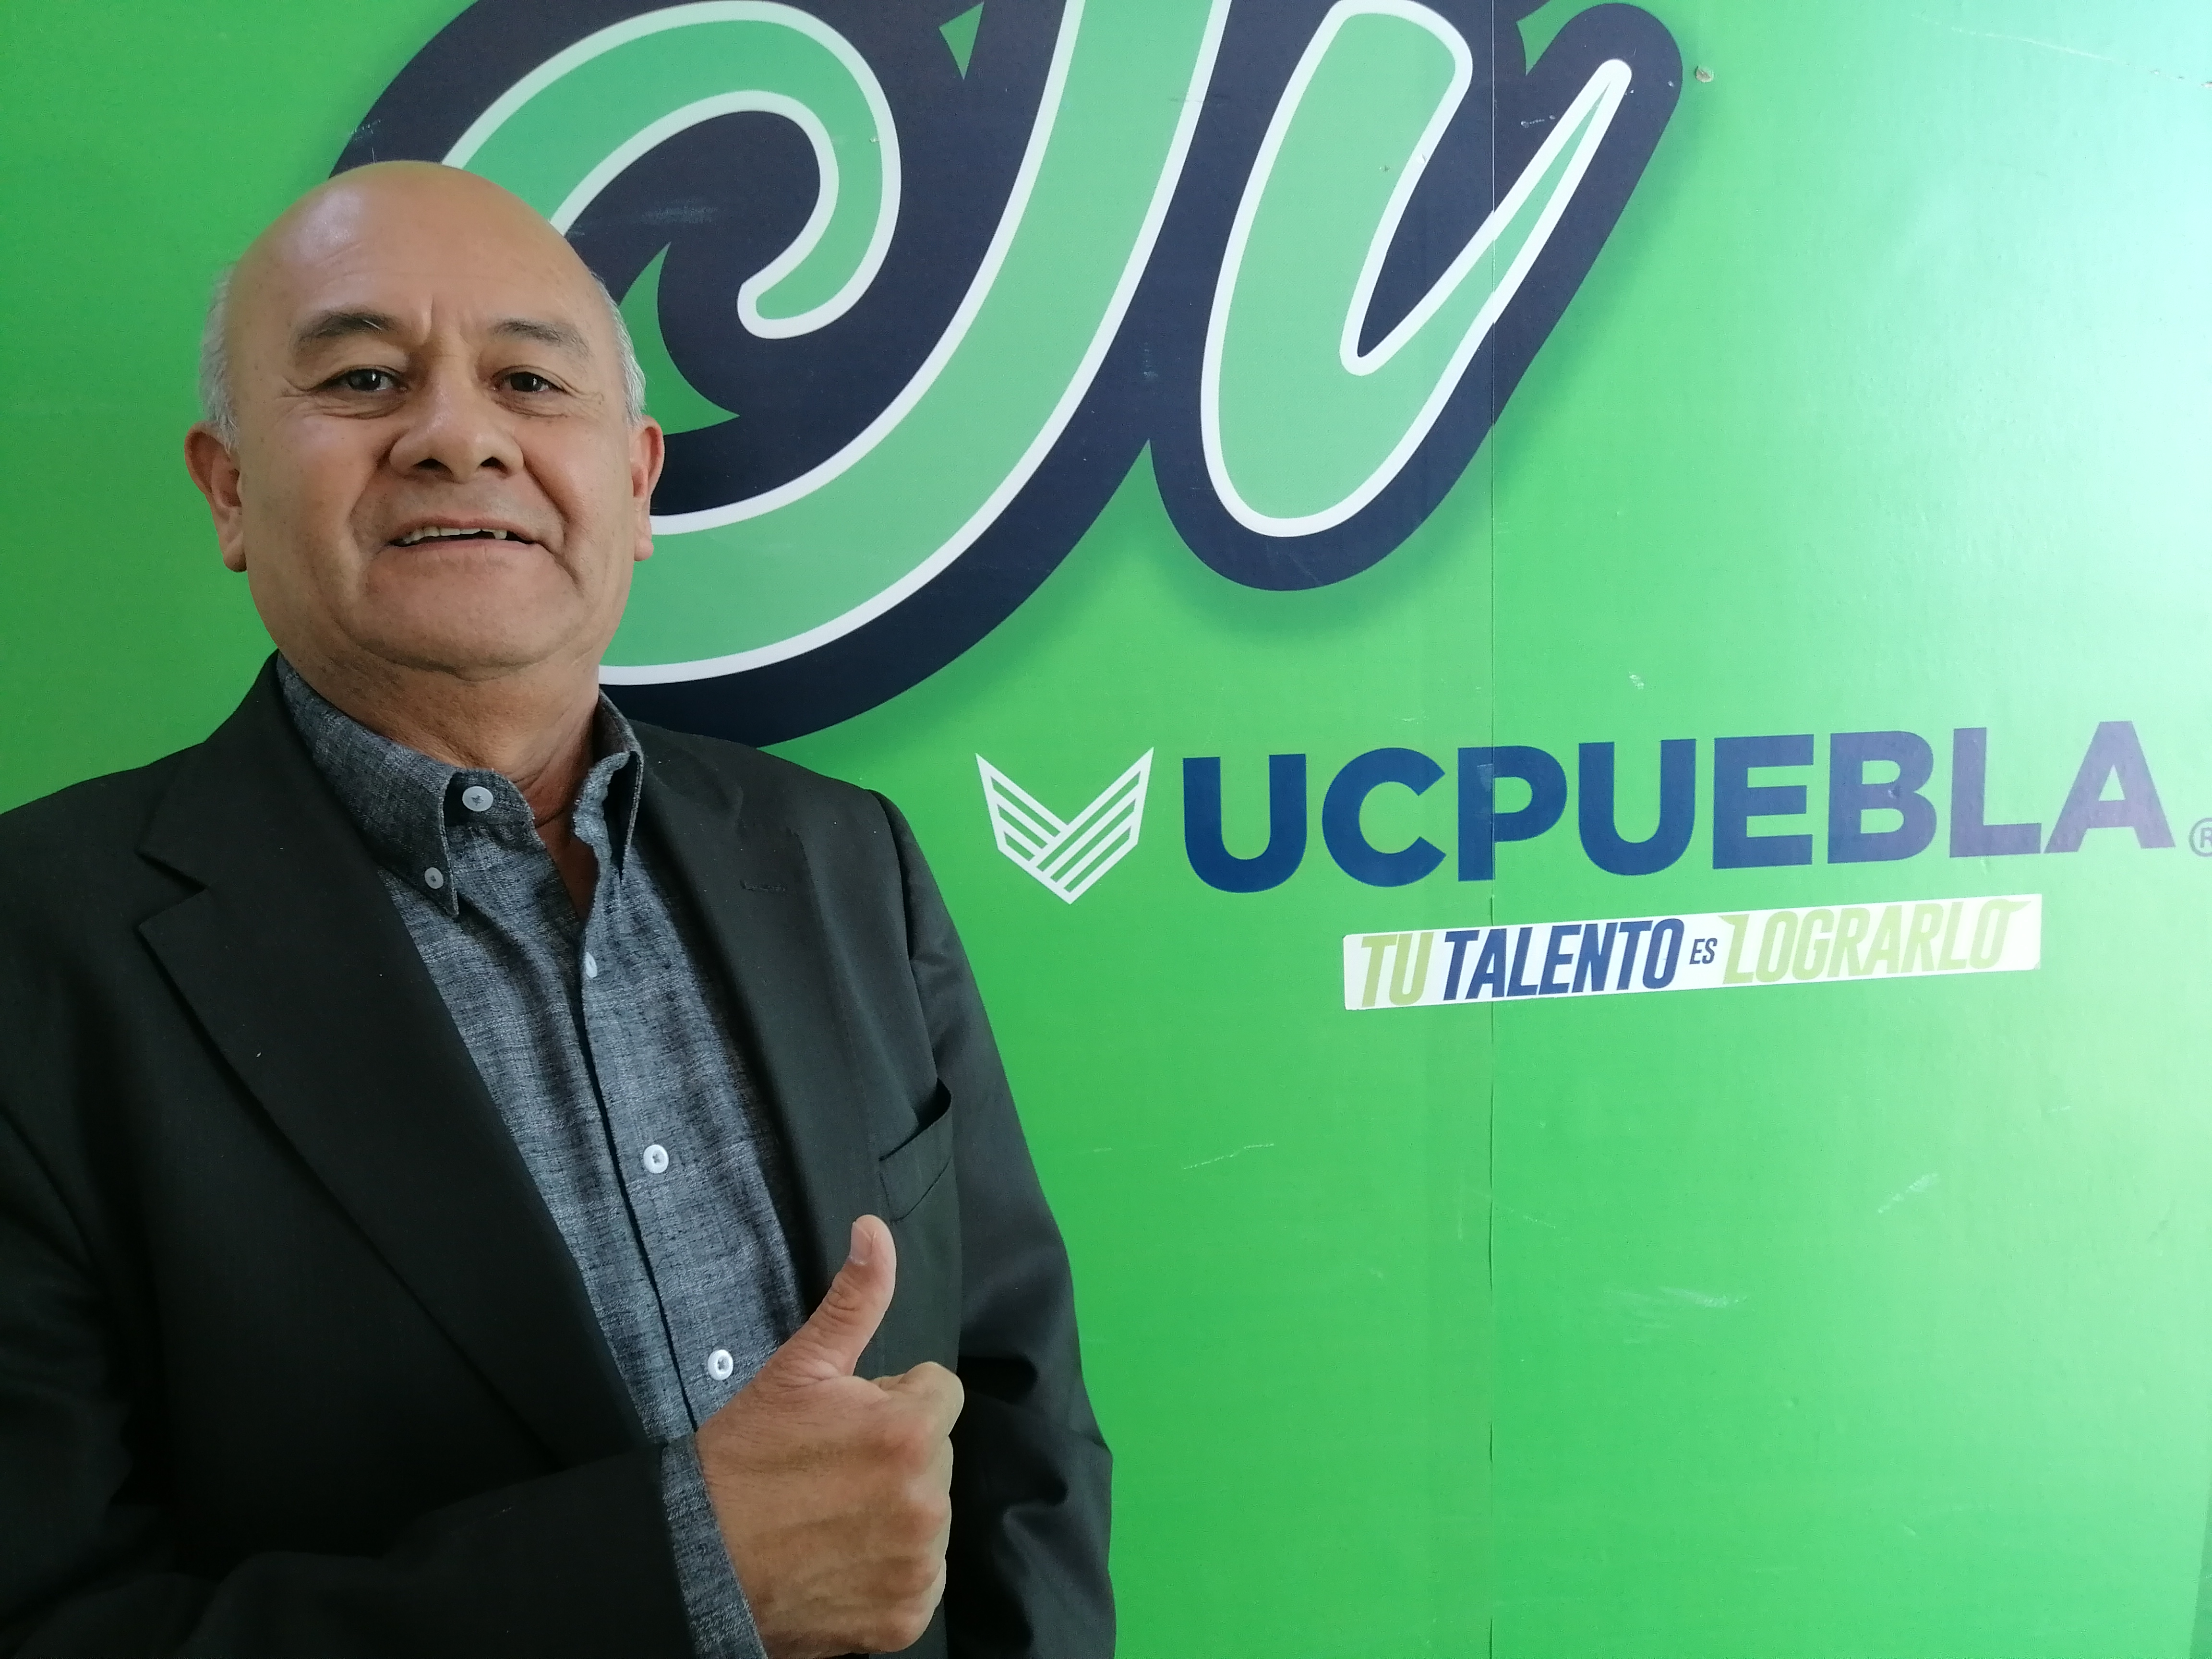 Asume Rolando Huchín Sosa la titularidad de Deportes de UC Puebla